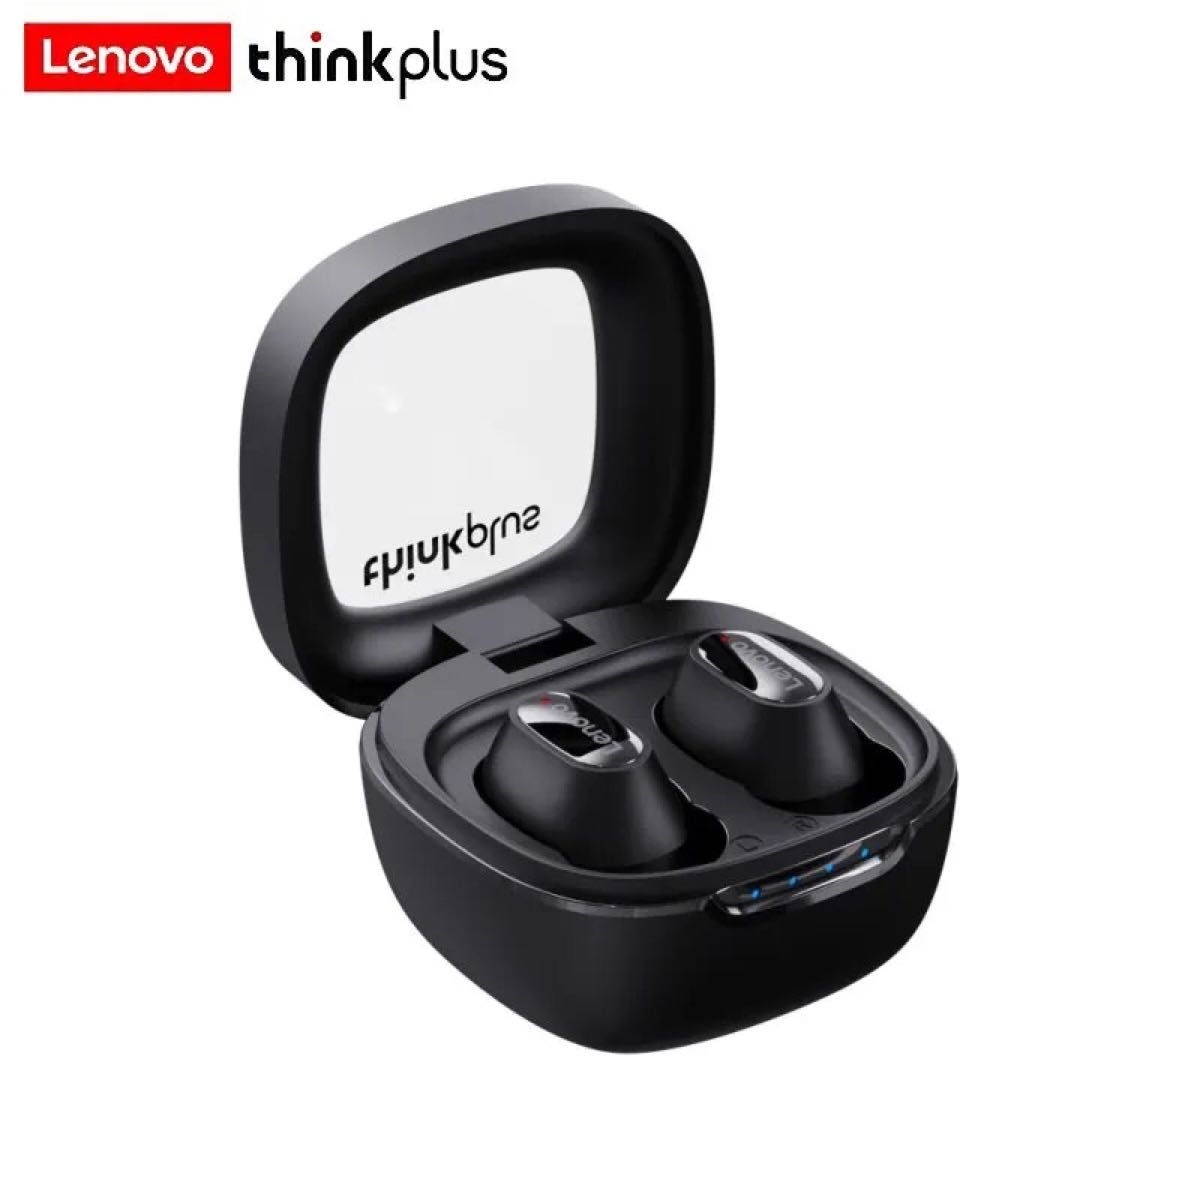 ☆リーズナブル/Lenovo/thinkplus (XT62) ワイヤレスイヤホン/BluetoothV5.3/HD通話/白